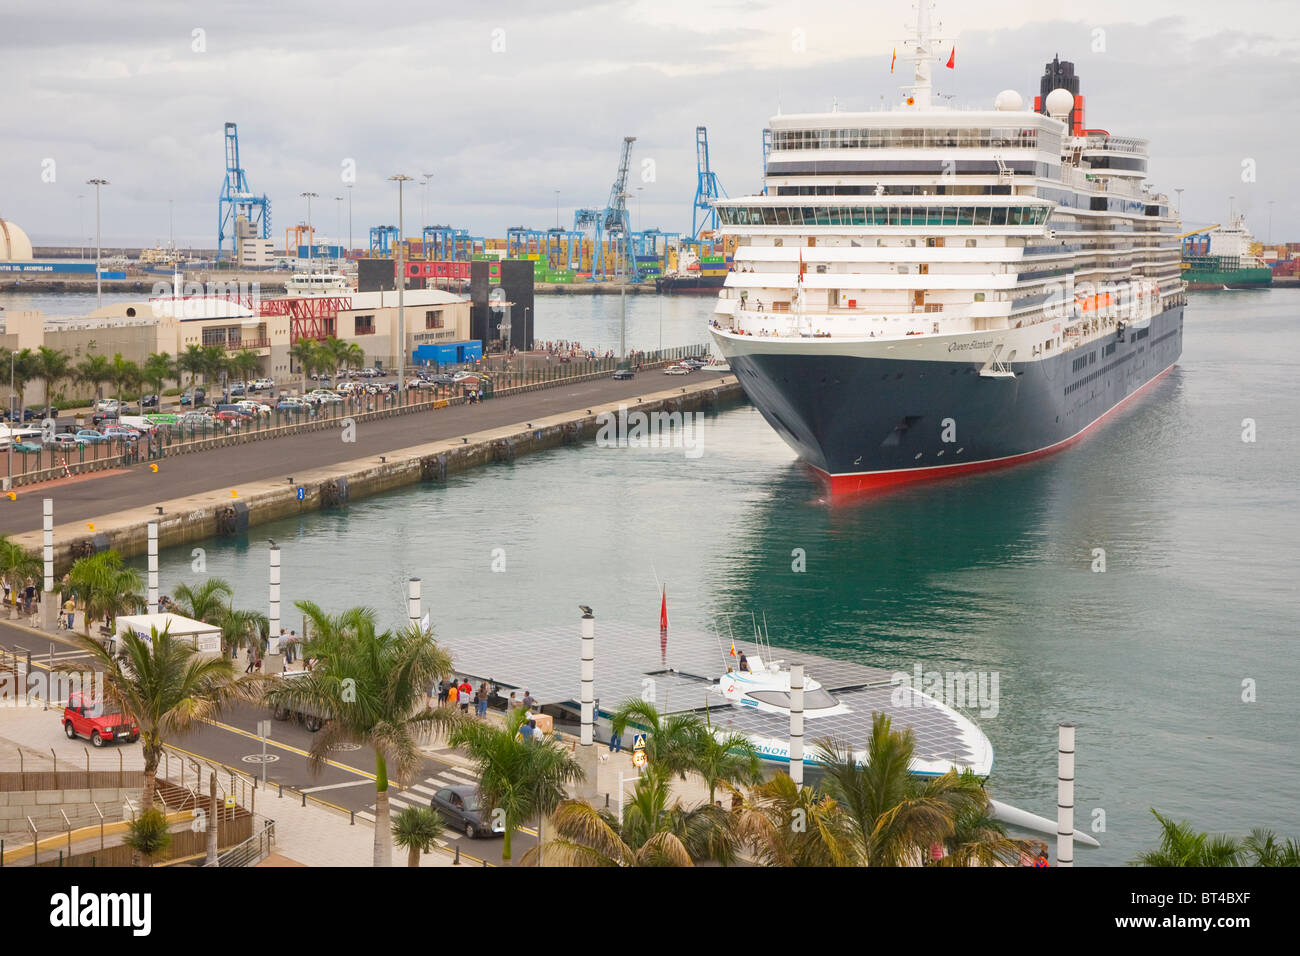 Queen Elizabeth cruise liner at Las Palmas, Gran Canaria on her maiden voyage Stock Photo